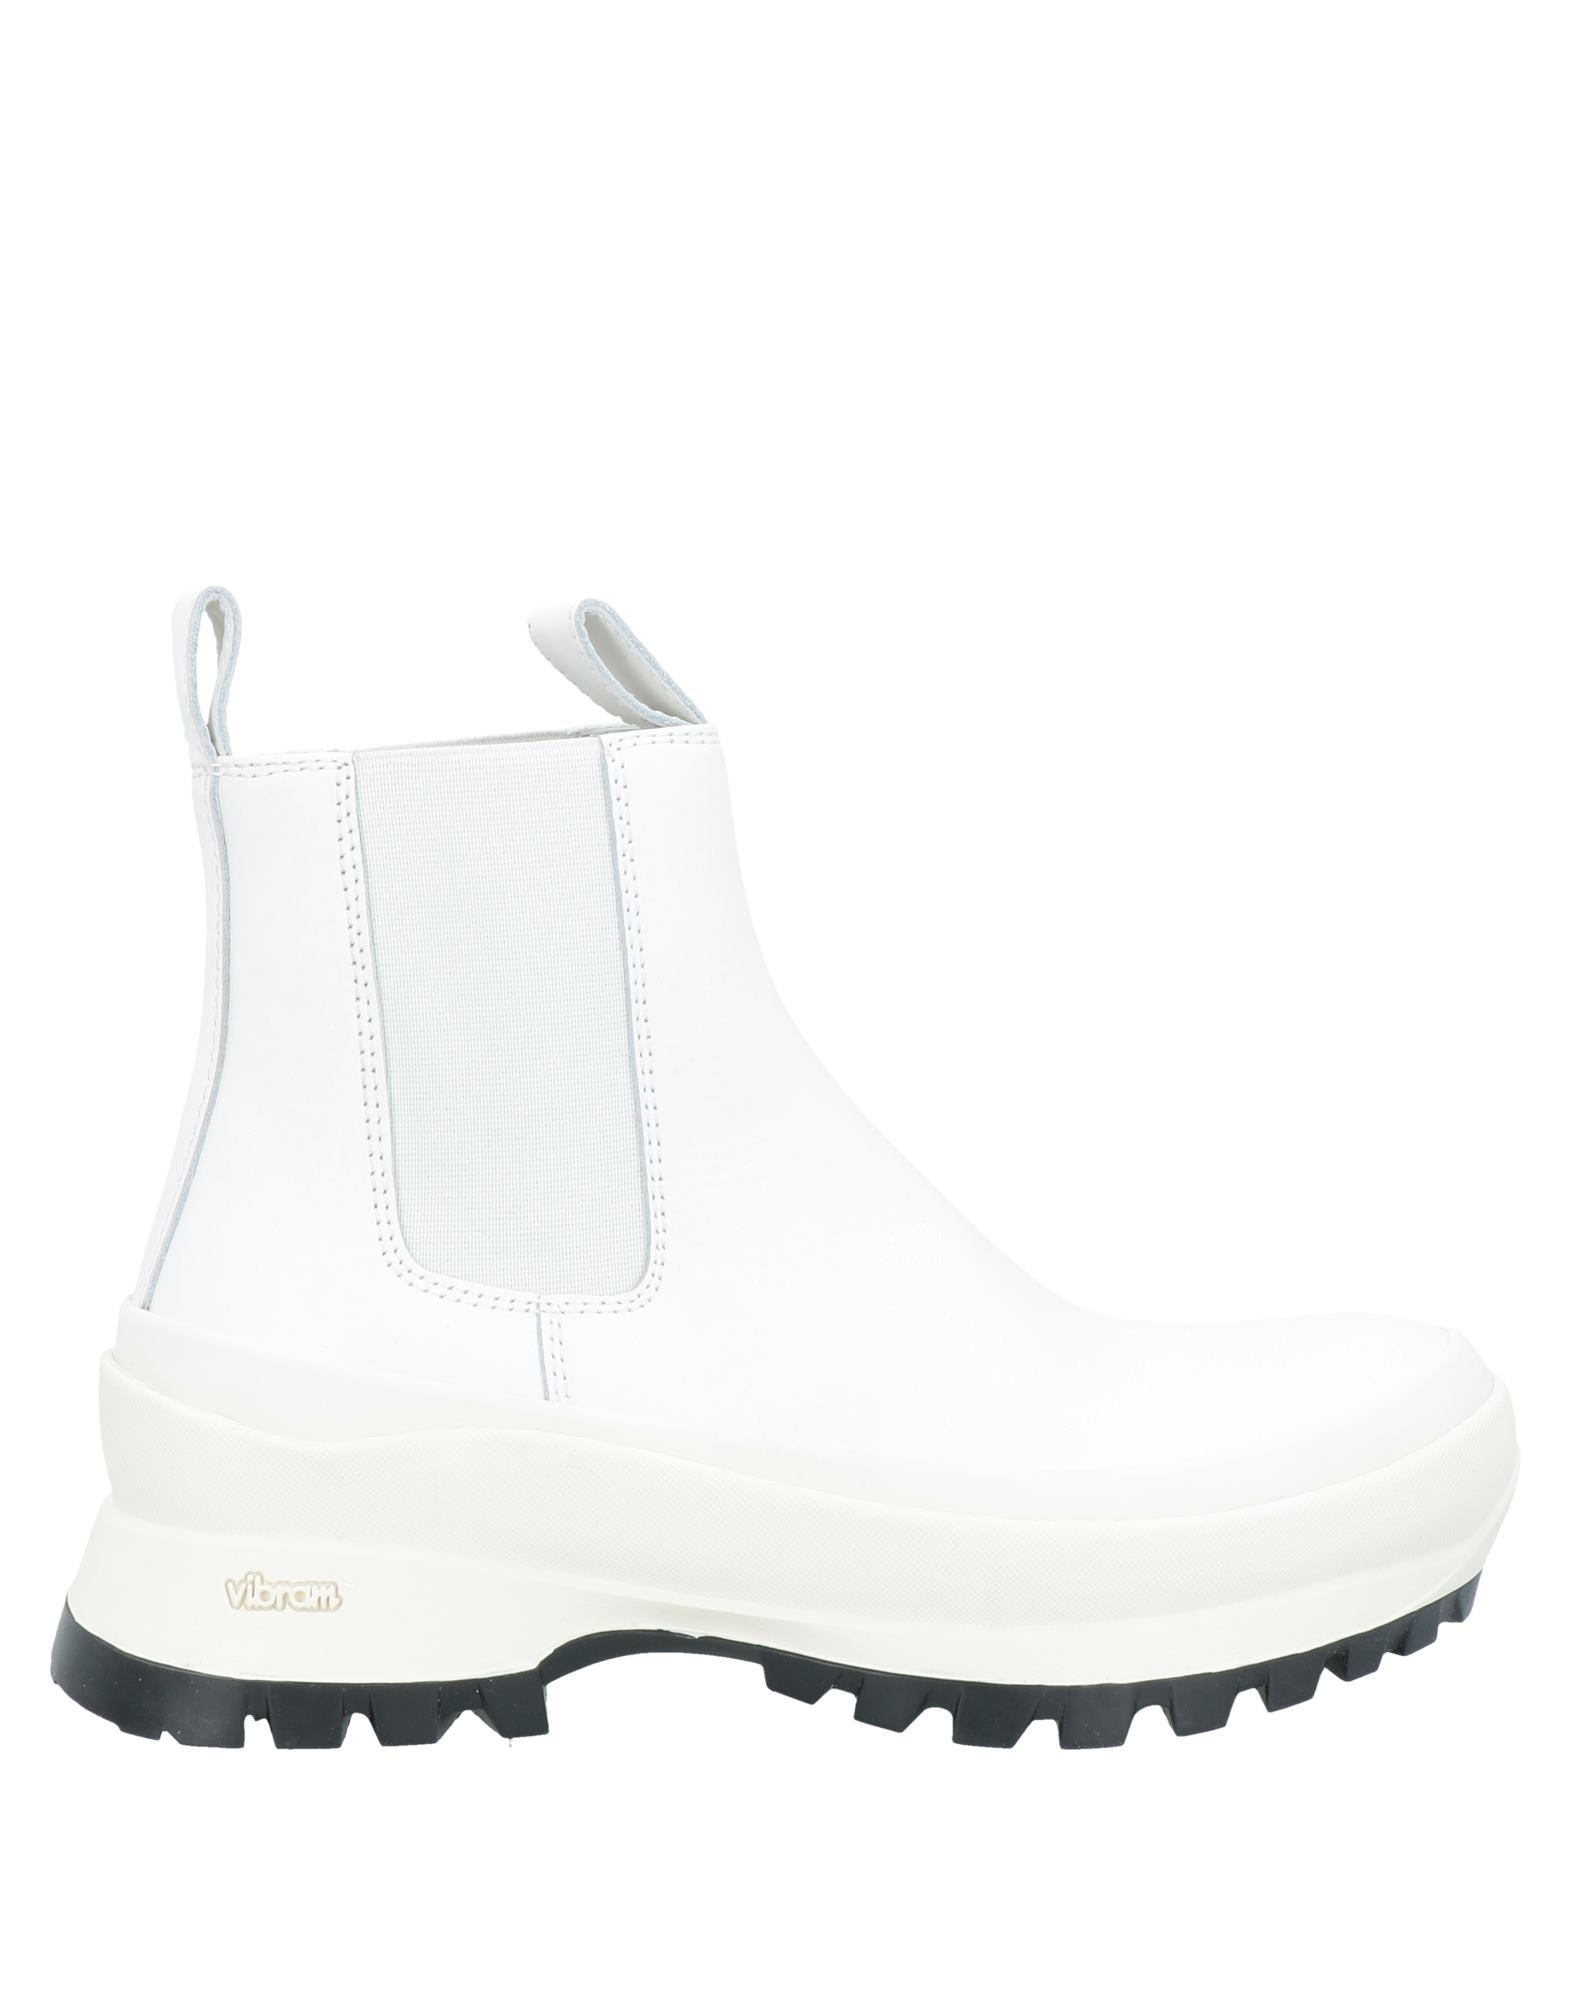 Shop Jil Sander Woman Ankle Boots White Size 8 Calfskin